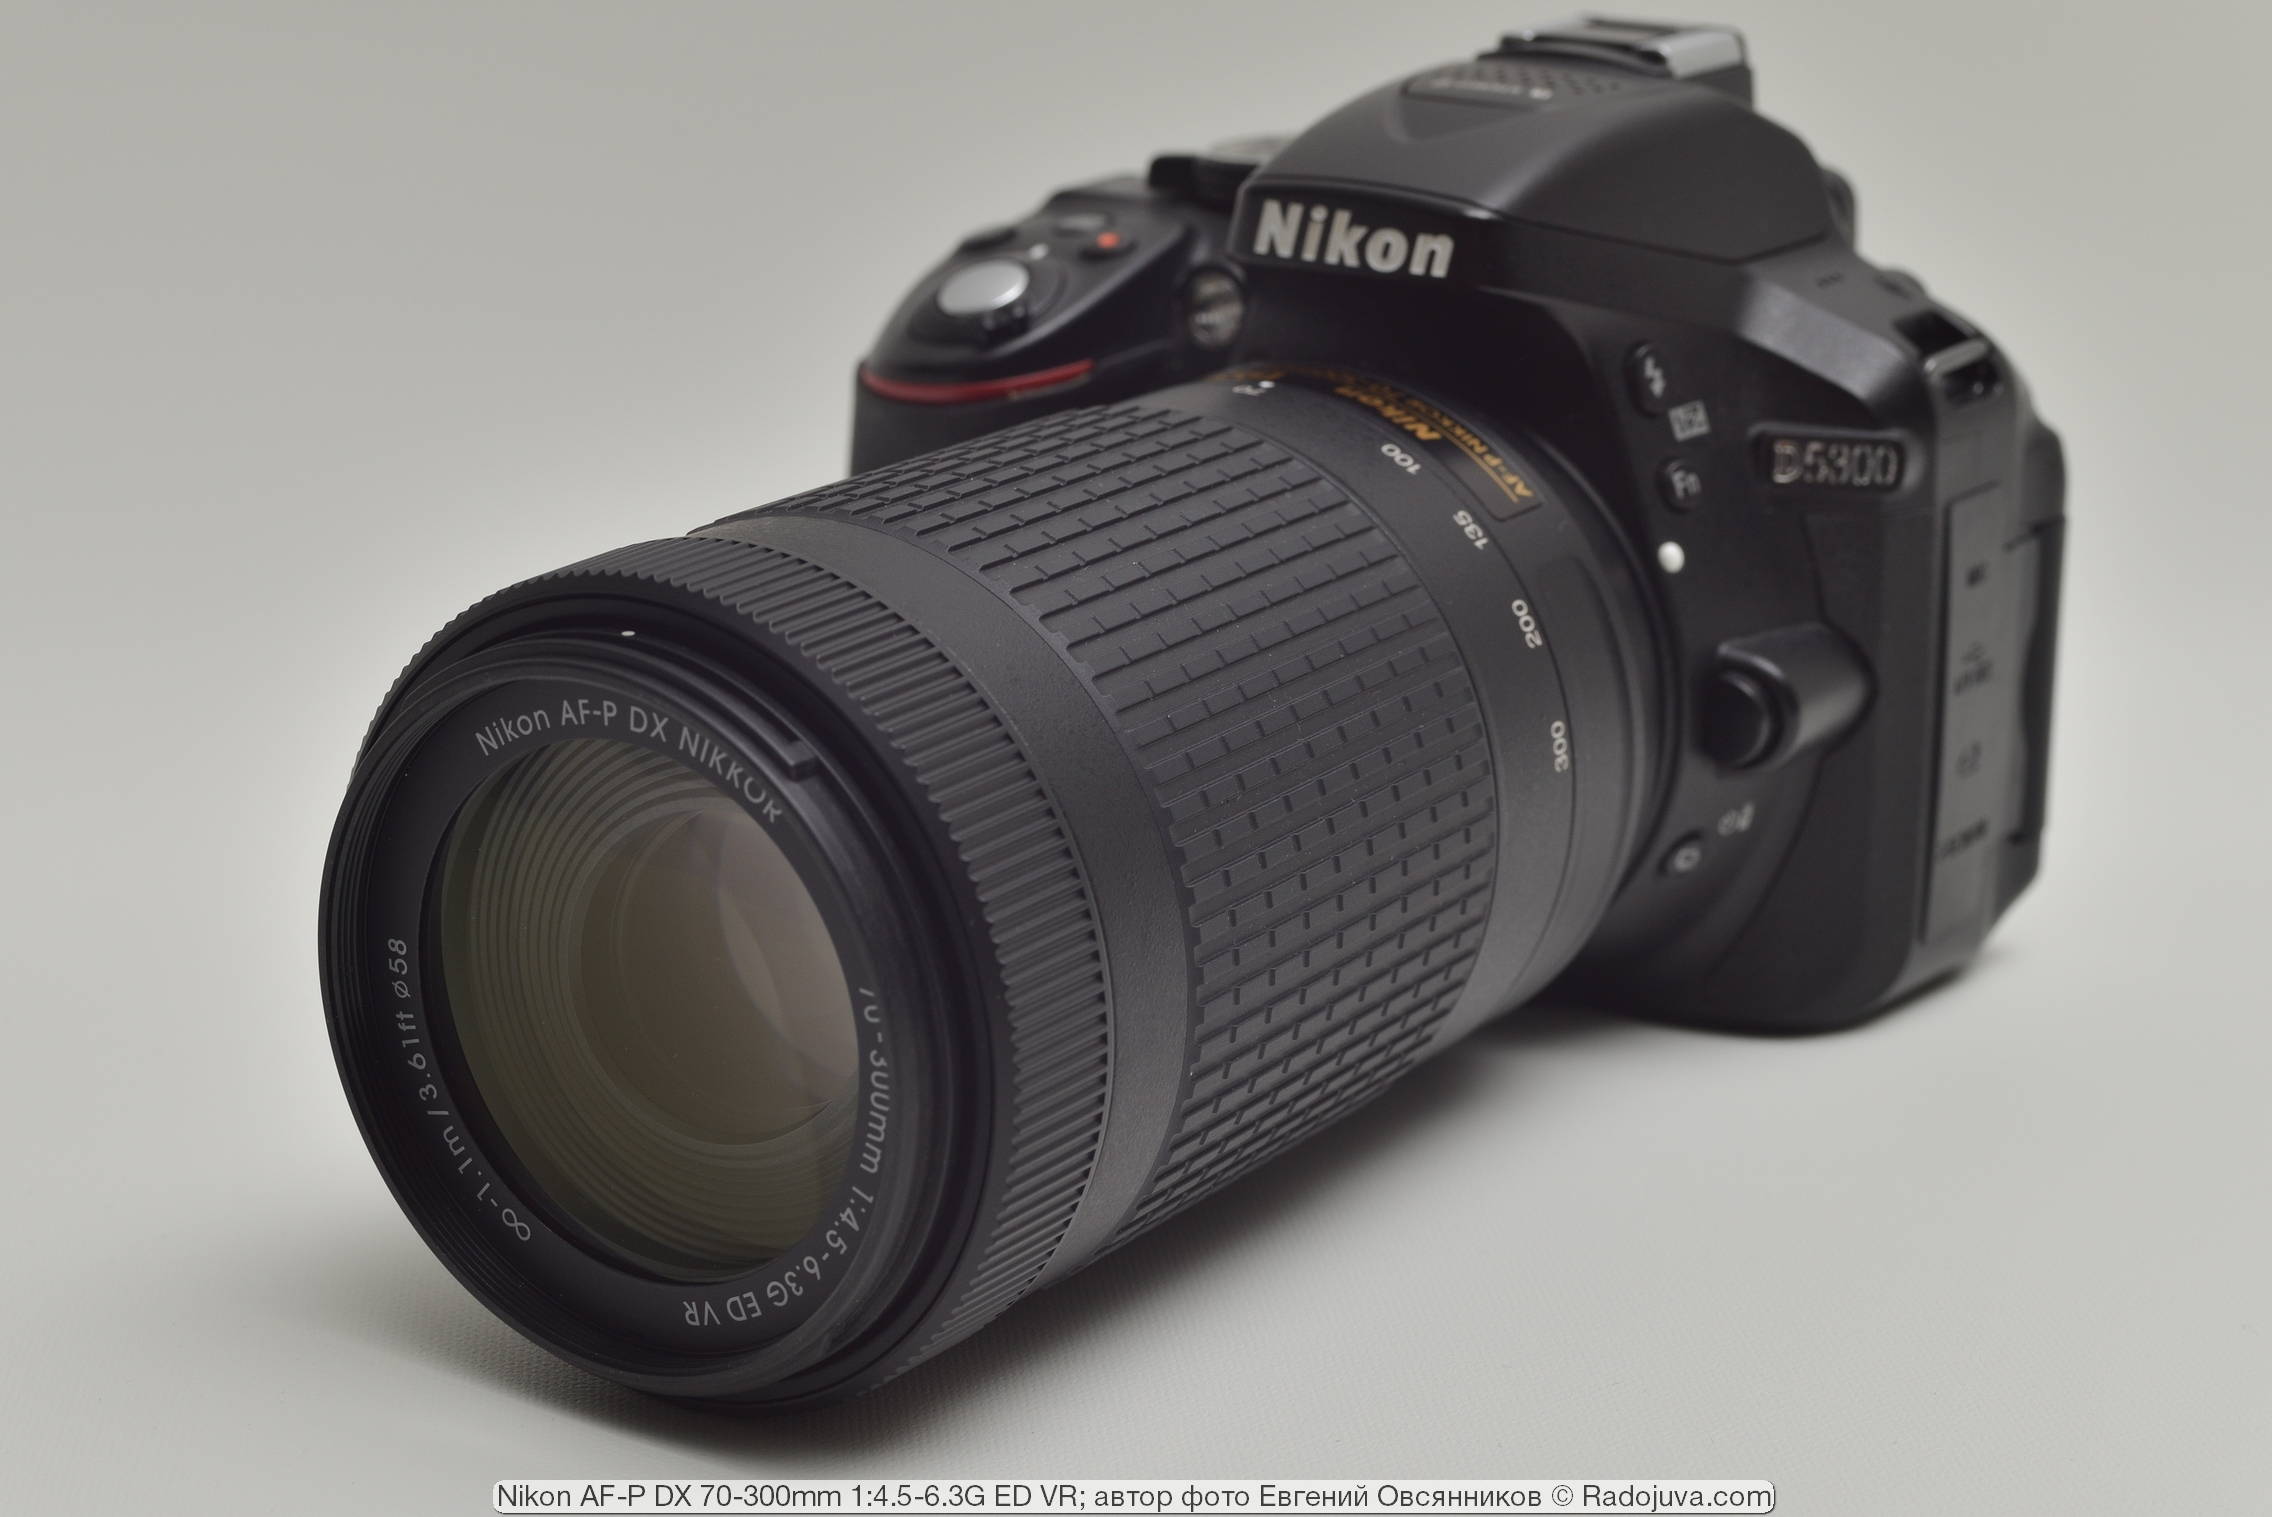 Nikon AF-P DX Nikkor 70-300mm 1: 4.5-6.3G ED VR. Review from the reader